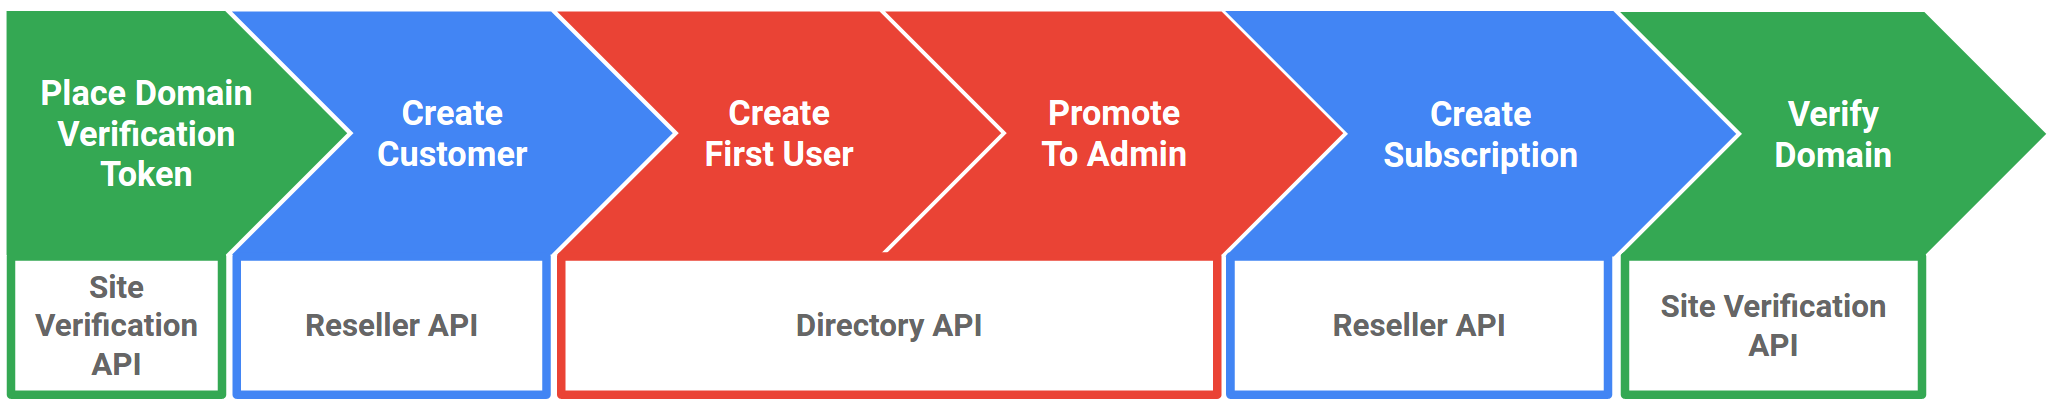 建立 Google Workspace 客戶時使用的 API 流程。